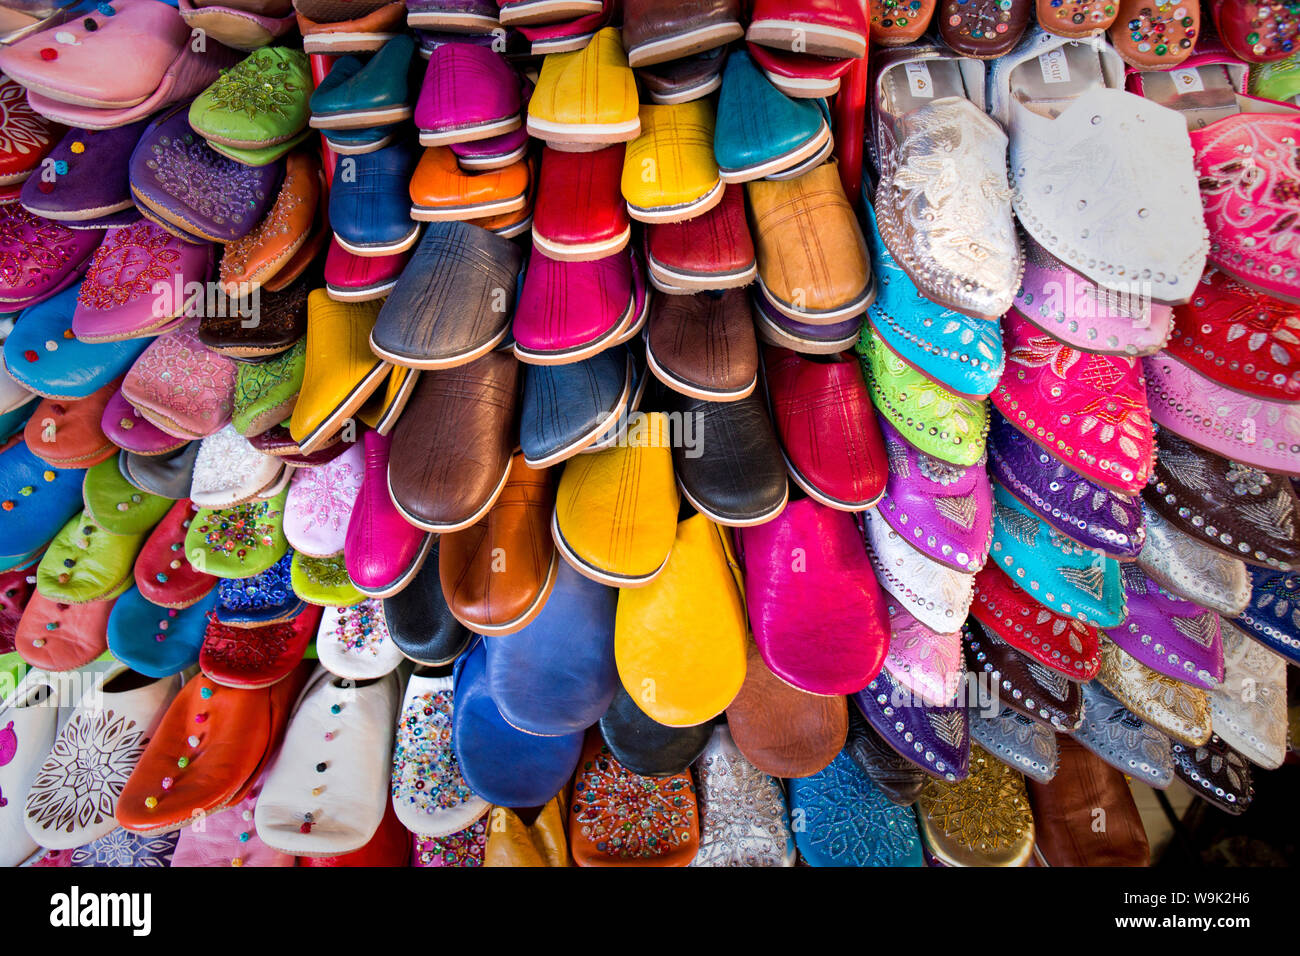 Des dizaines de chaussons traditionnels colorés dans le souk de la place Djemaa el Fna, Marrakech, Maroc, Afrique du Nord, Afrique Banque D'Images